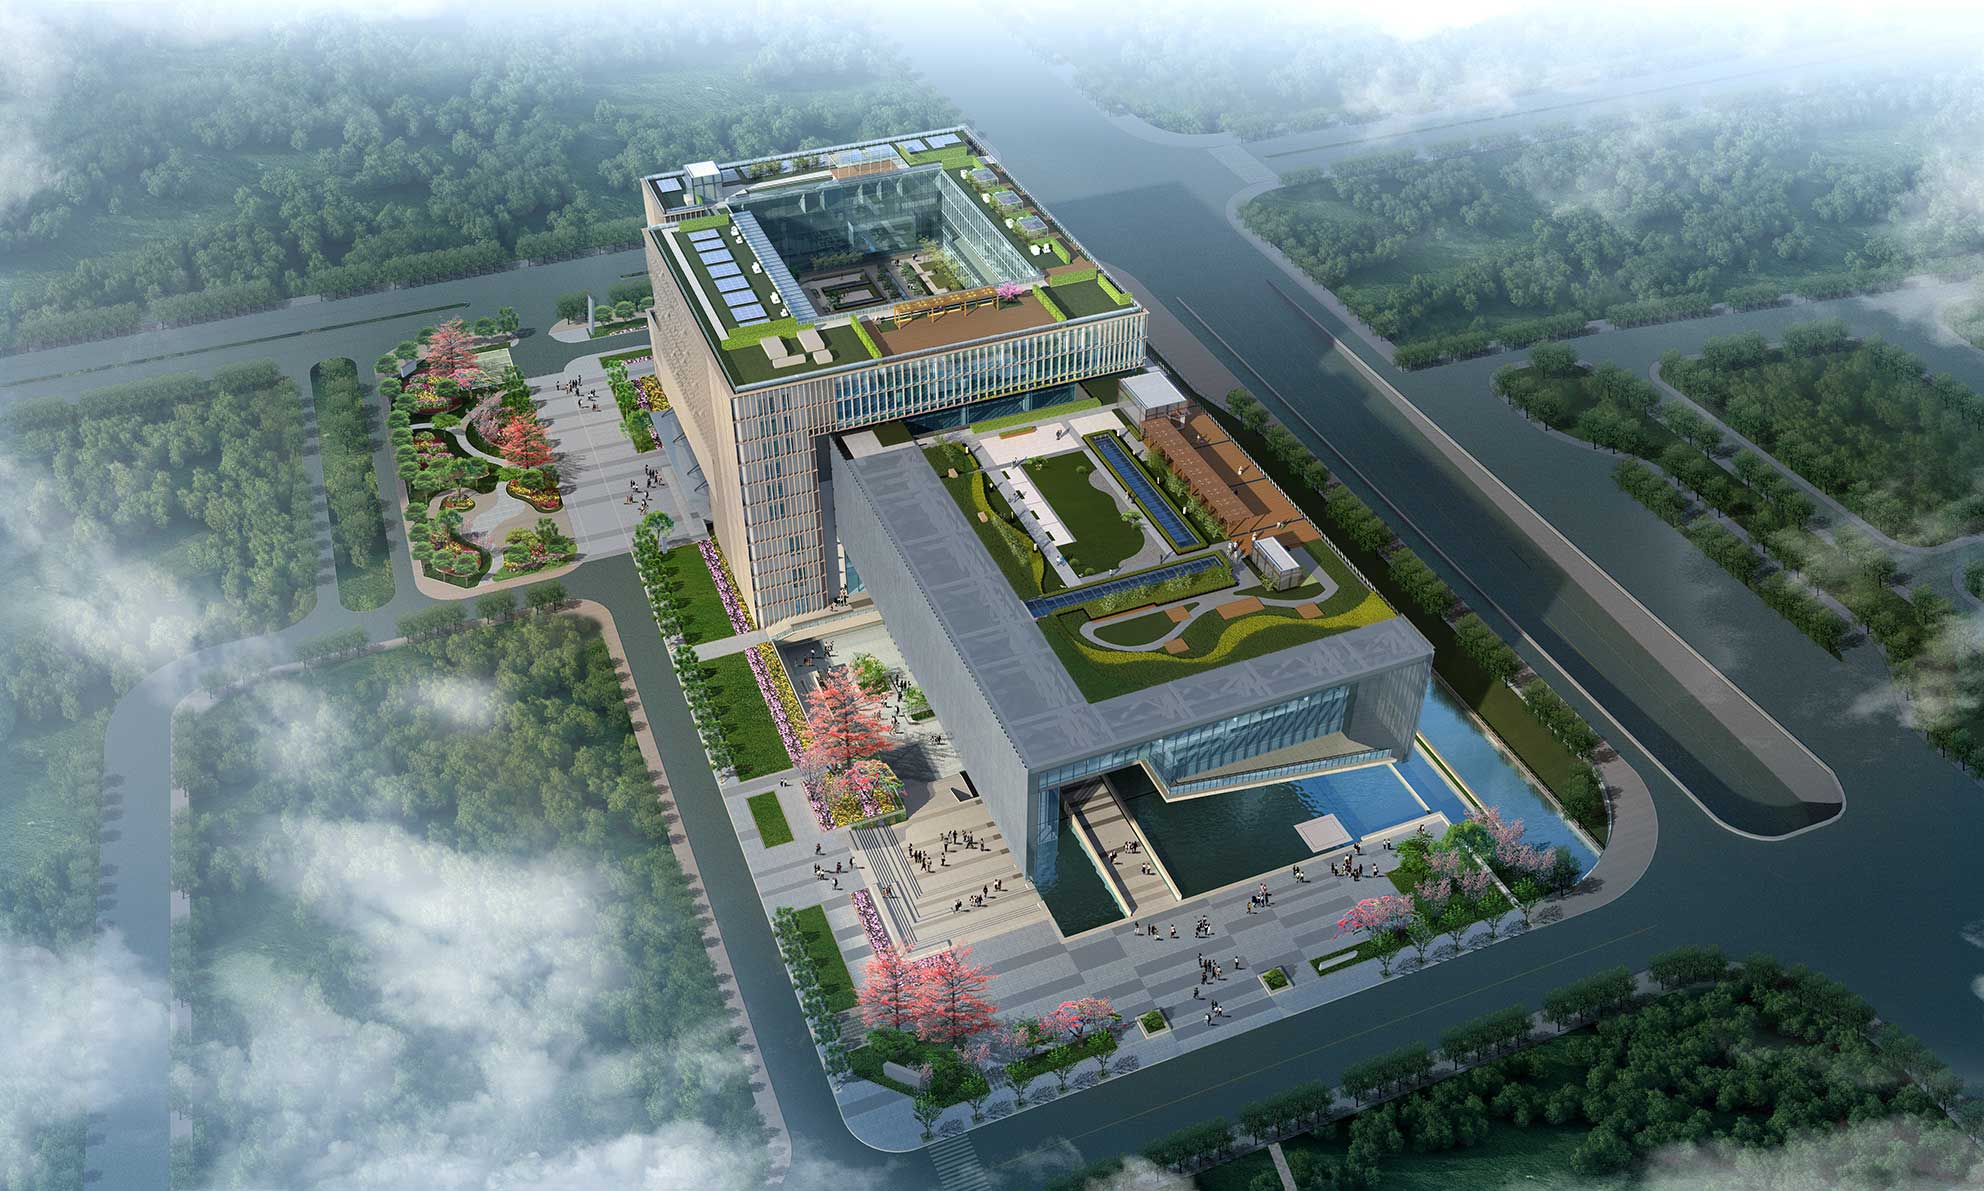 广州城市规划展览中心 . 空间导视系统设计